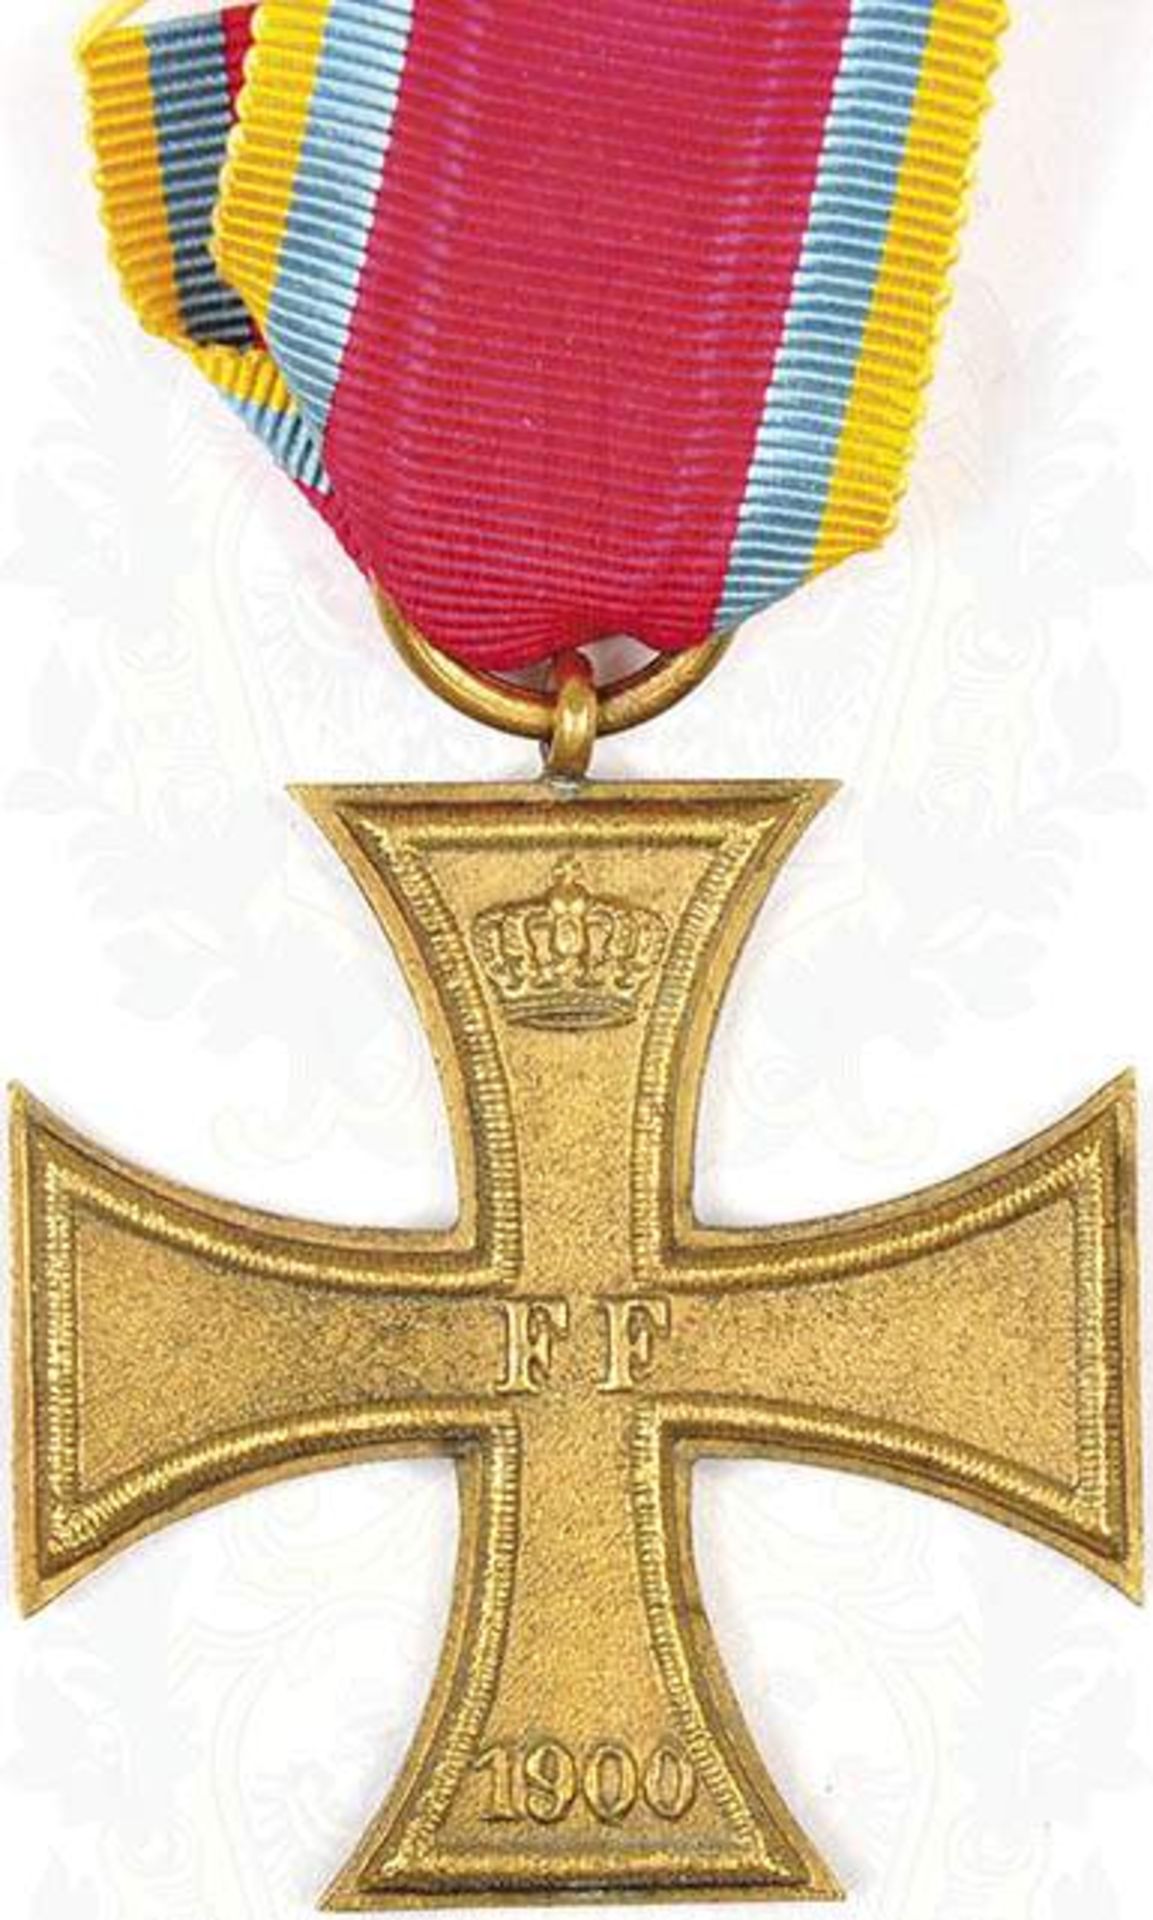 MECKLENBURG SCHWERIN, Militärverdienstkreuz 2. Klasse m. Jahreszahl "1900", Bronze/vergld., am